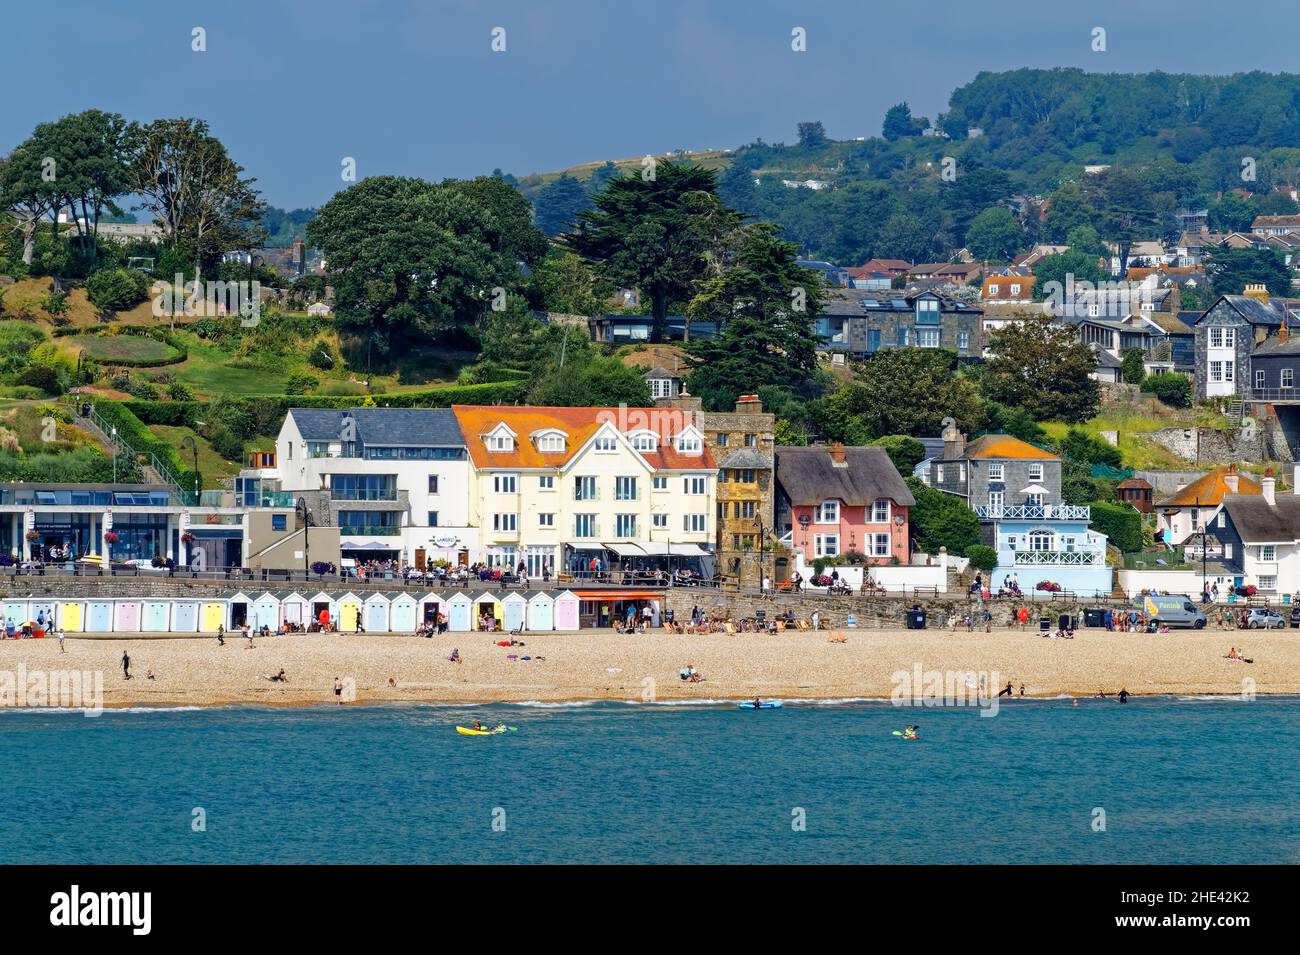 Royaume-Uni, Dorset, Lyme Regis, front de mer, Marine Parade Cottages et ville Banque D'Images